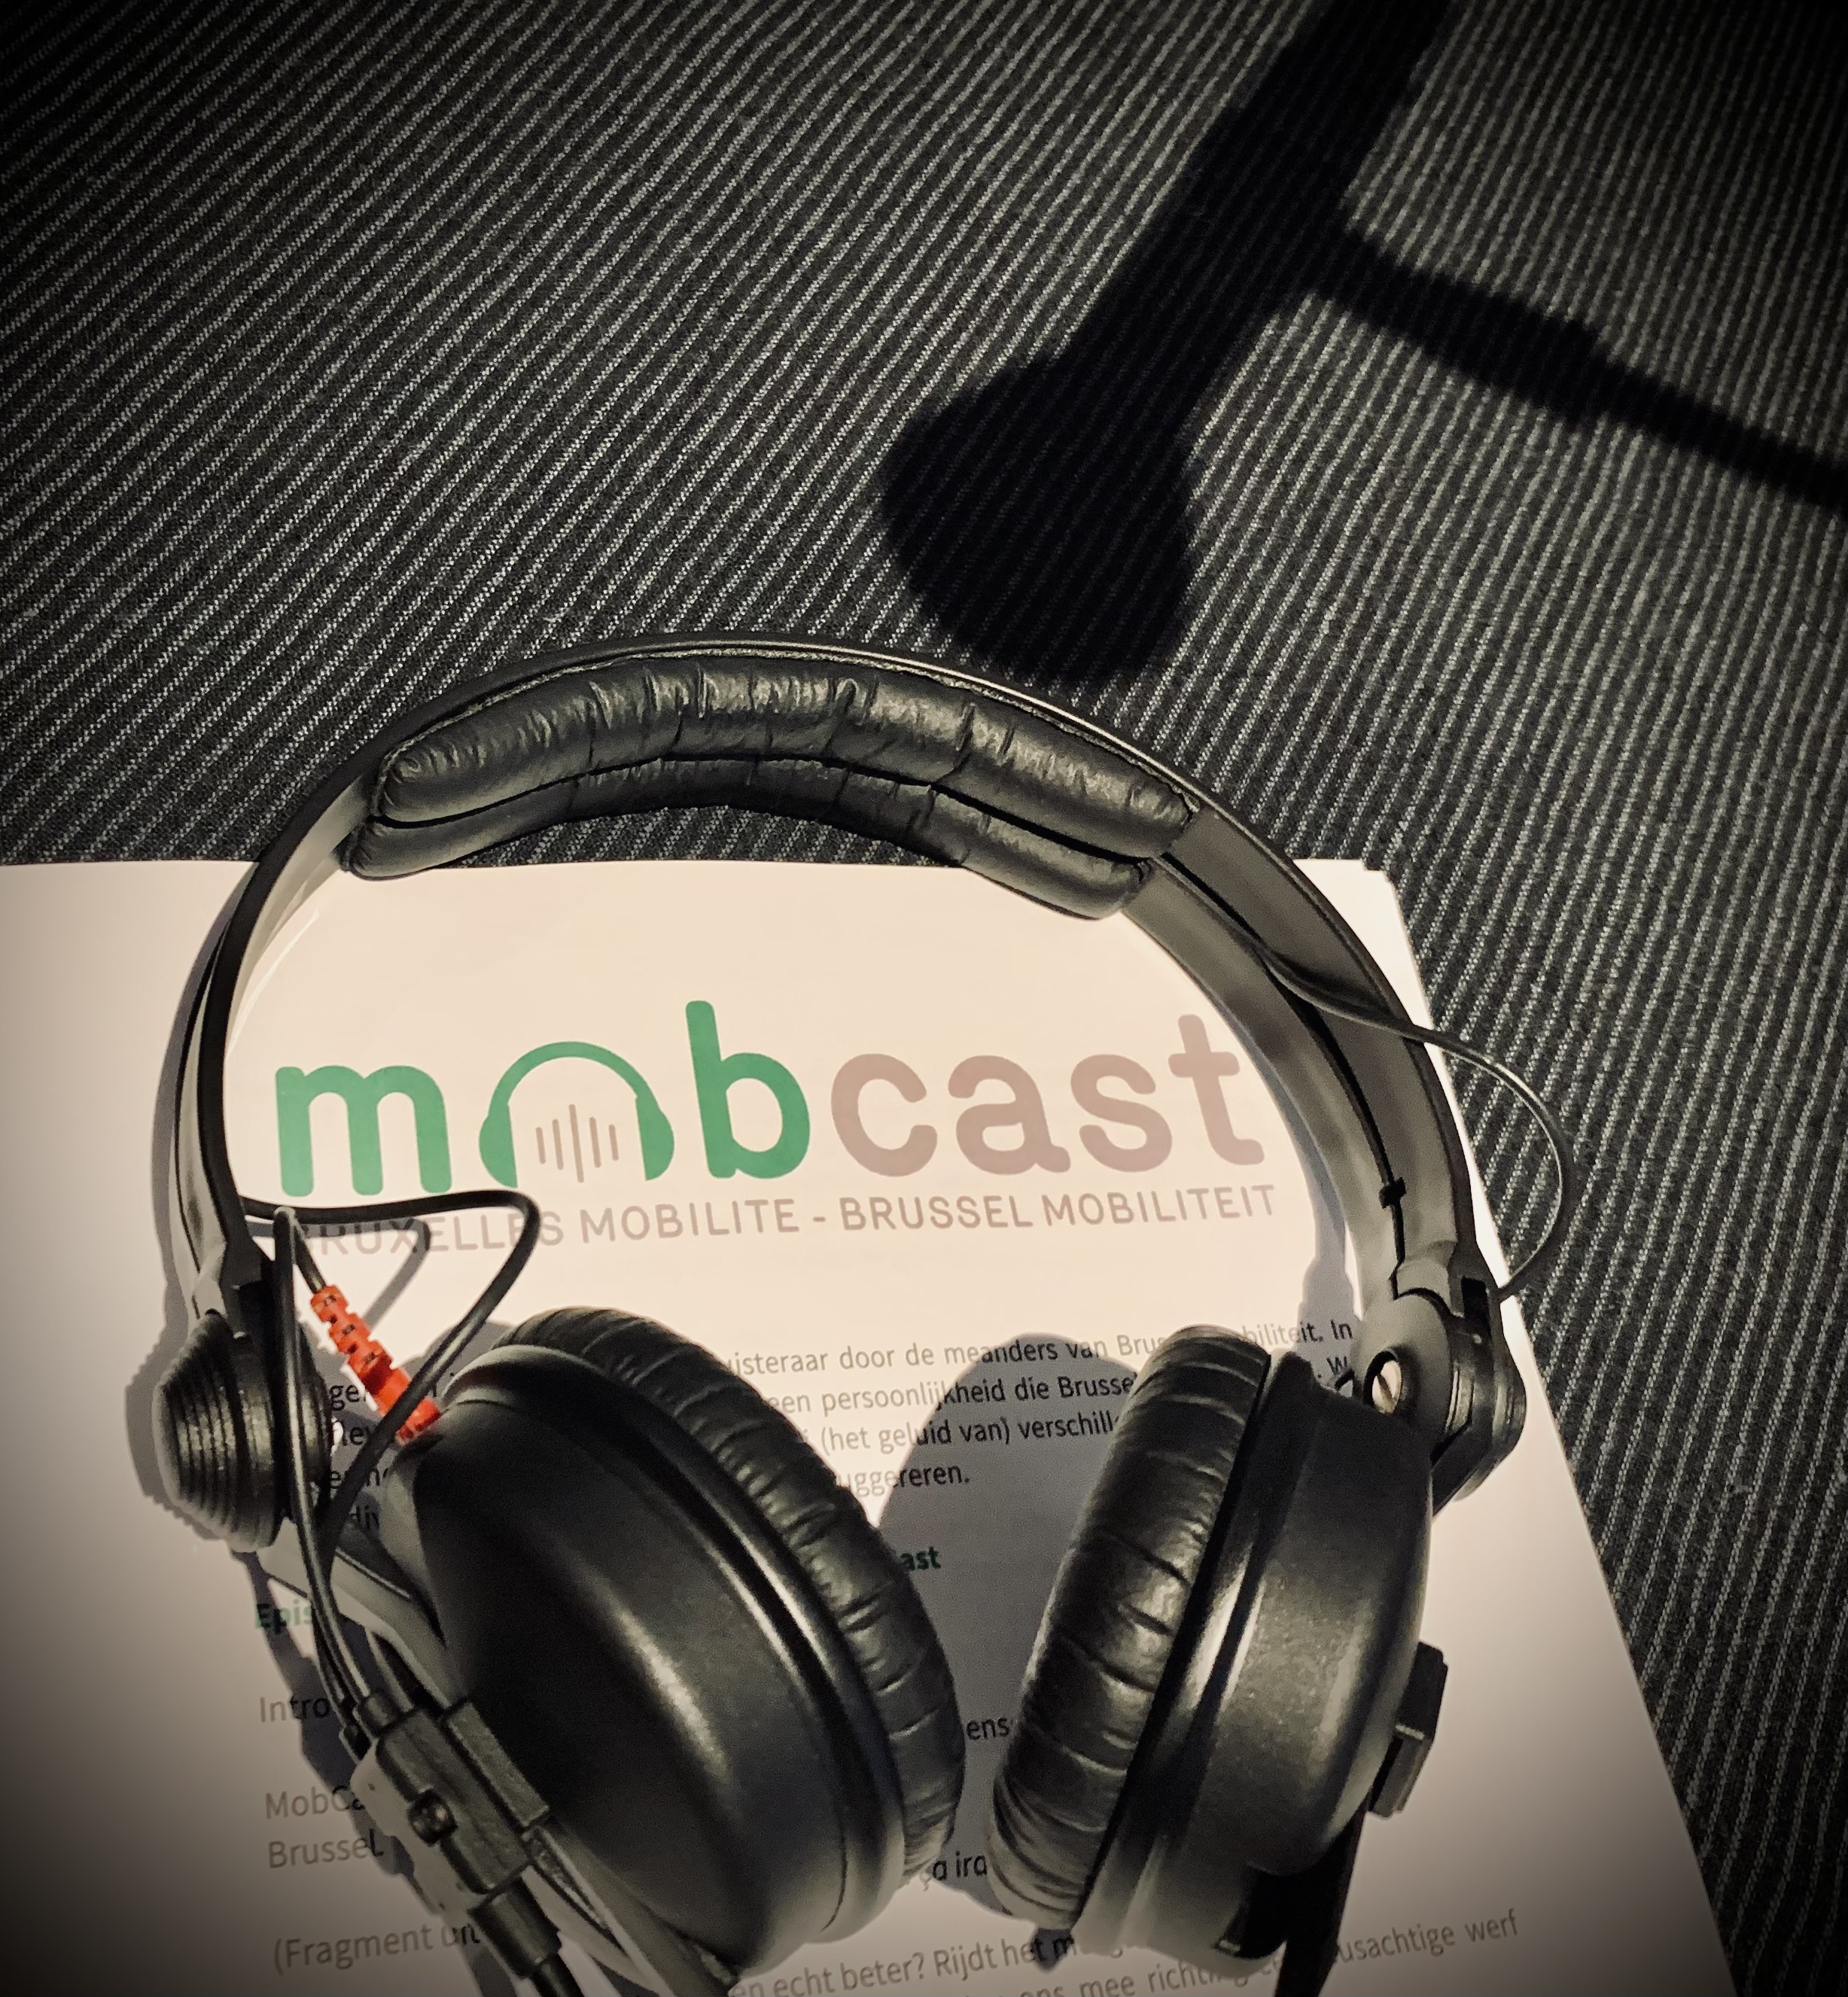 Casque audio déposé sur une page où il est indiqué « Mobcast – Bruxelles Mobilité – Brussel Mobiliteit » et l’ombre d’un micro.